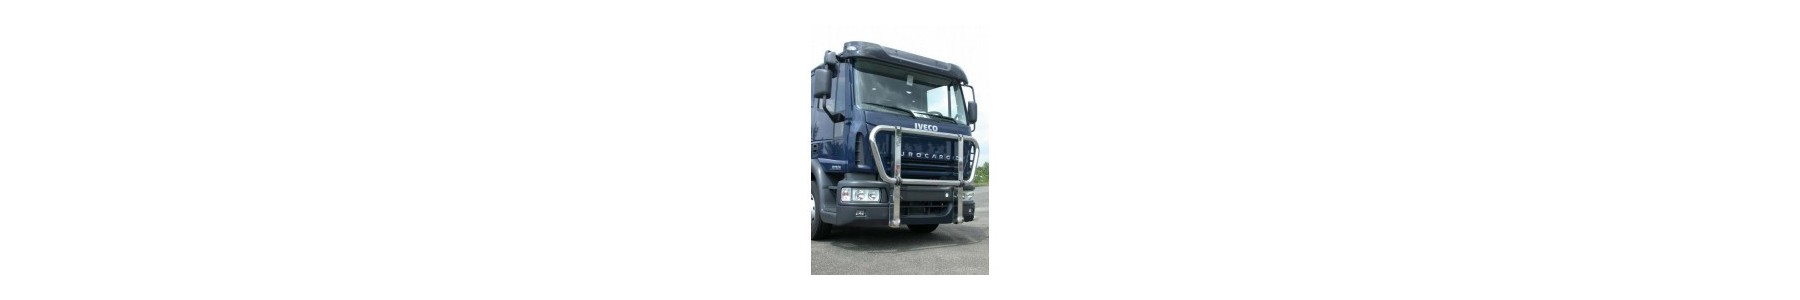 PARE BUFFLE pour votre camion Iveco EUROCARGO 22h22: Vente accessoires tuning poids lourd